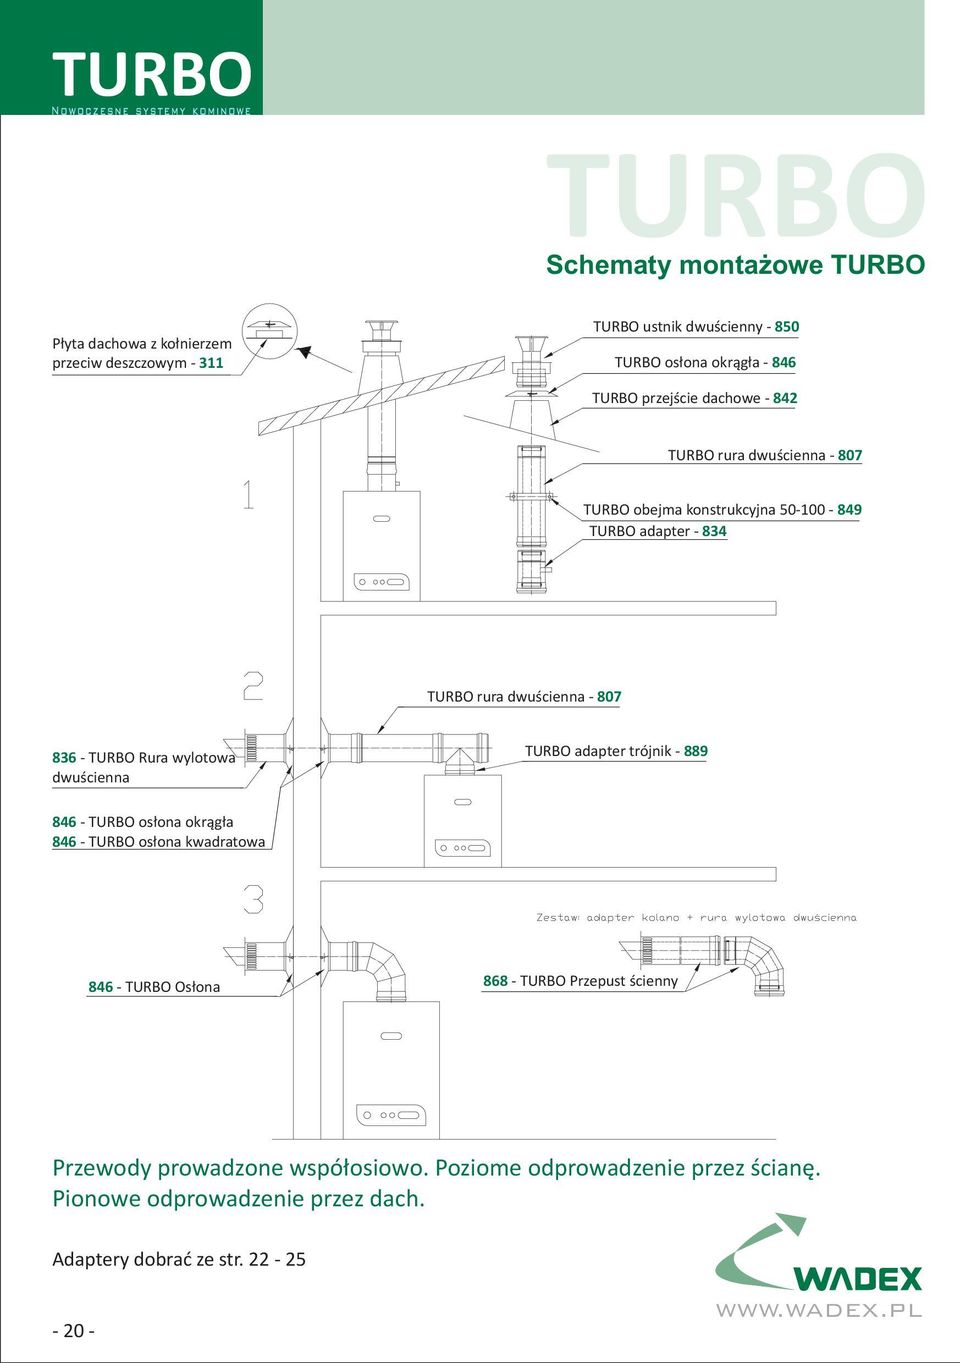 Rura wylotowa dwuścienna TURBO adapter trójnik - 889 846 - TURBO osłona okrągła 846 - TURBO osłona kwadratowa 846 - TURBO Osłona 868 - TURBO Przepust